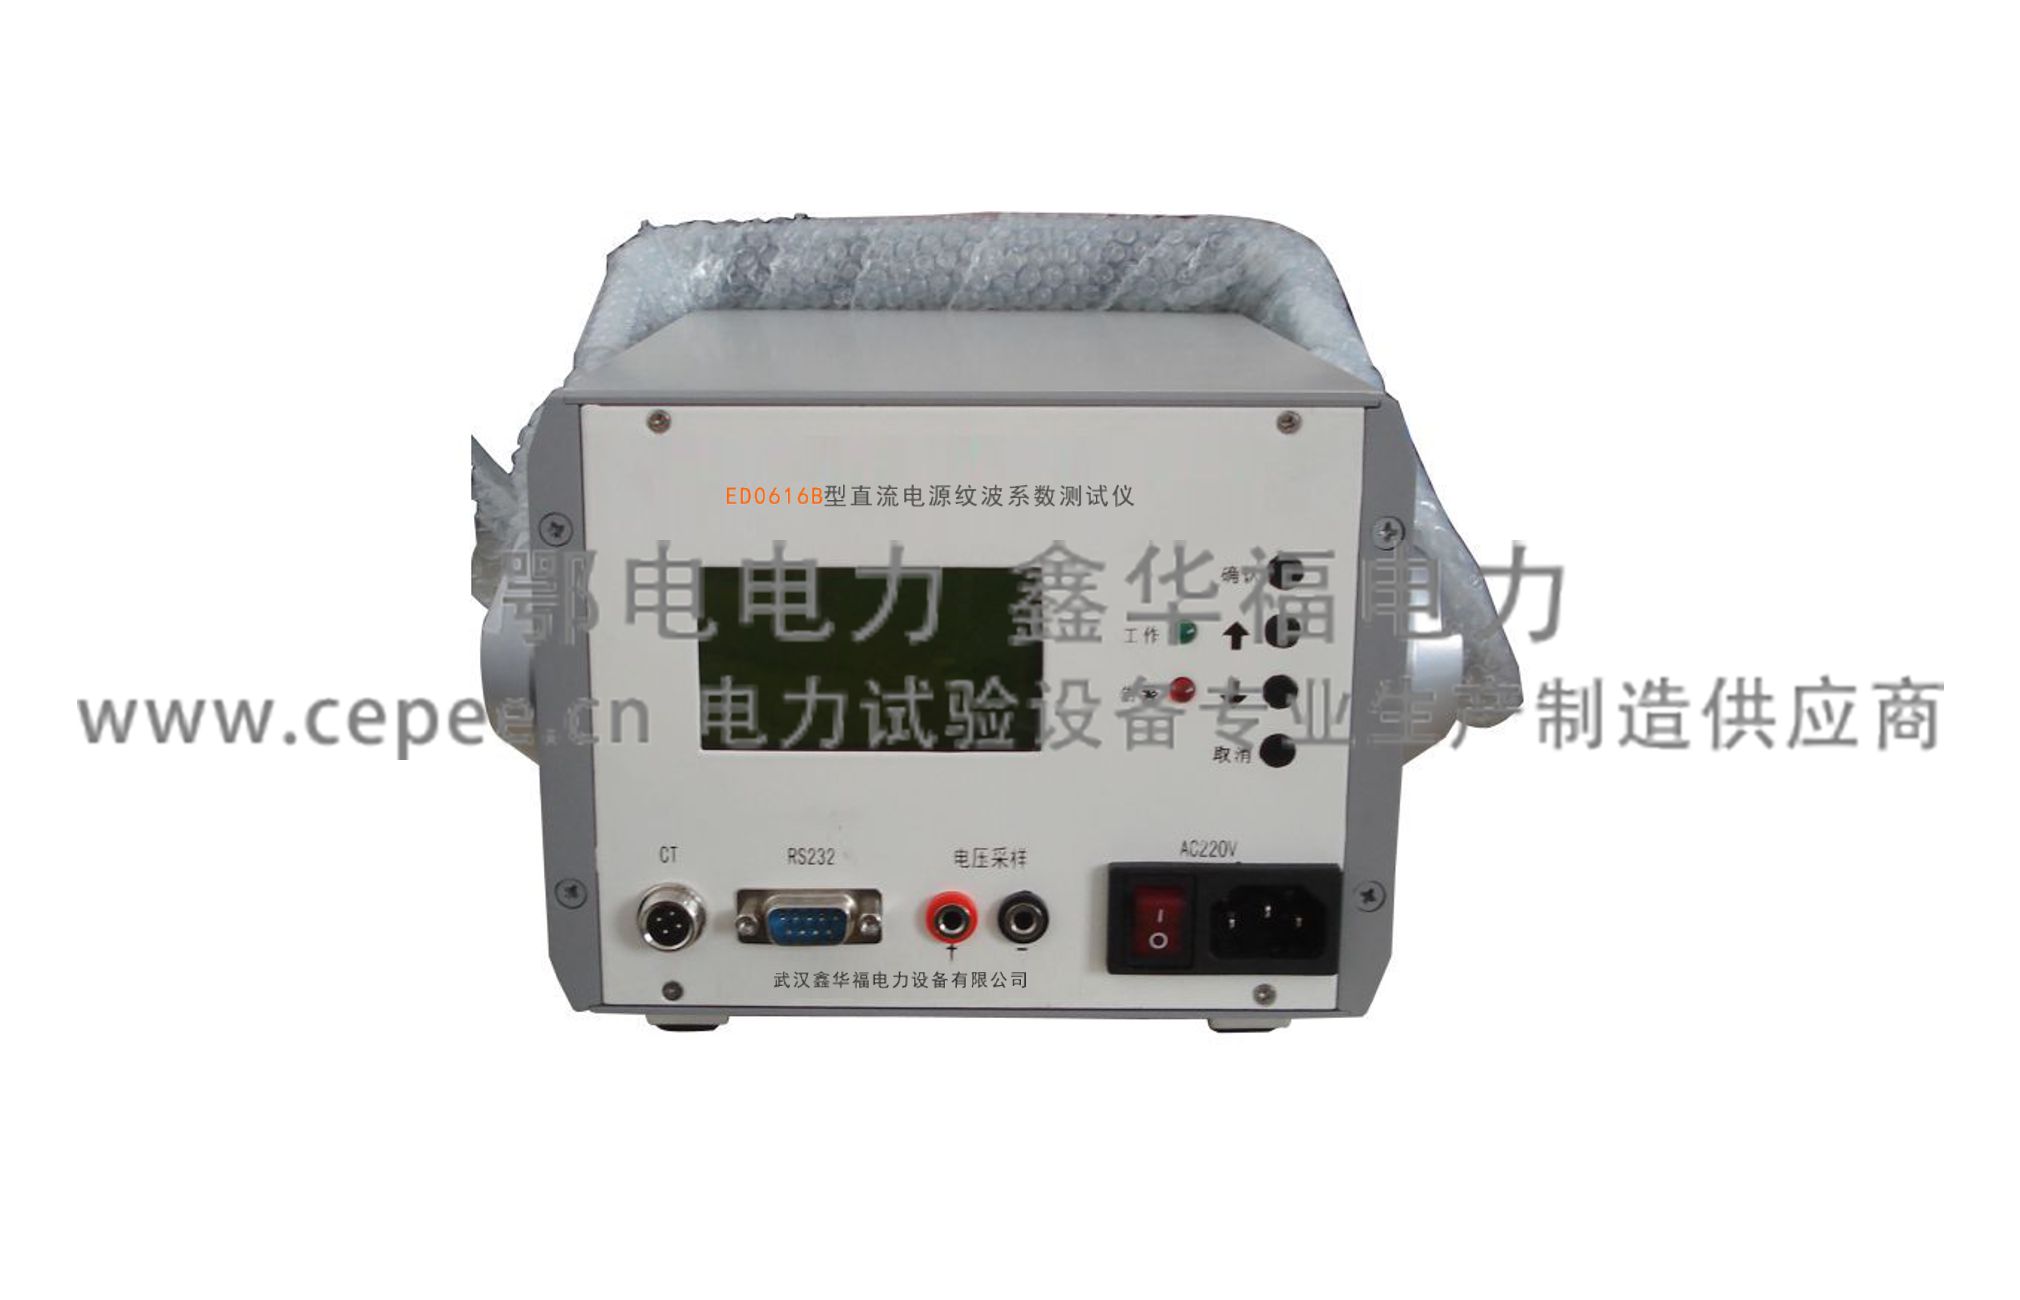 ED0616B型直流电源纹波系数测试仪